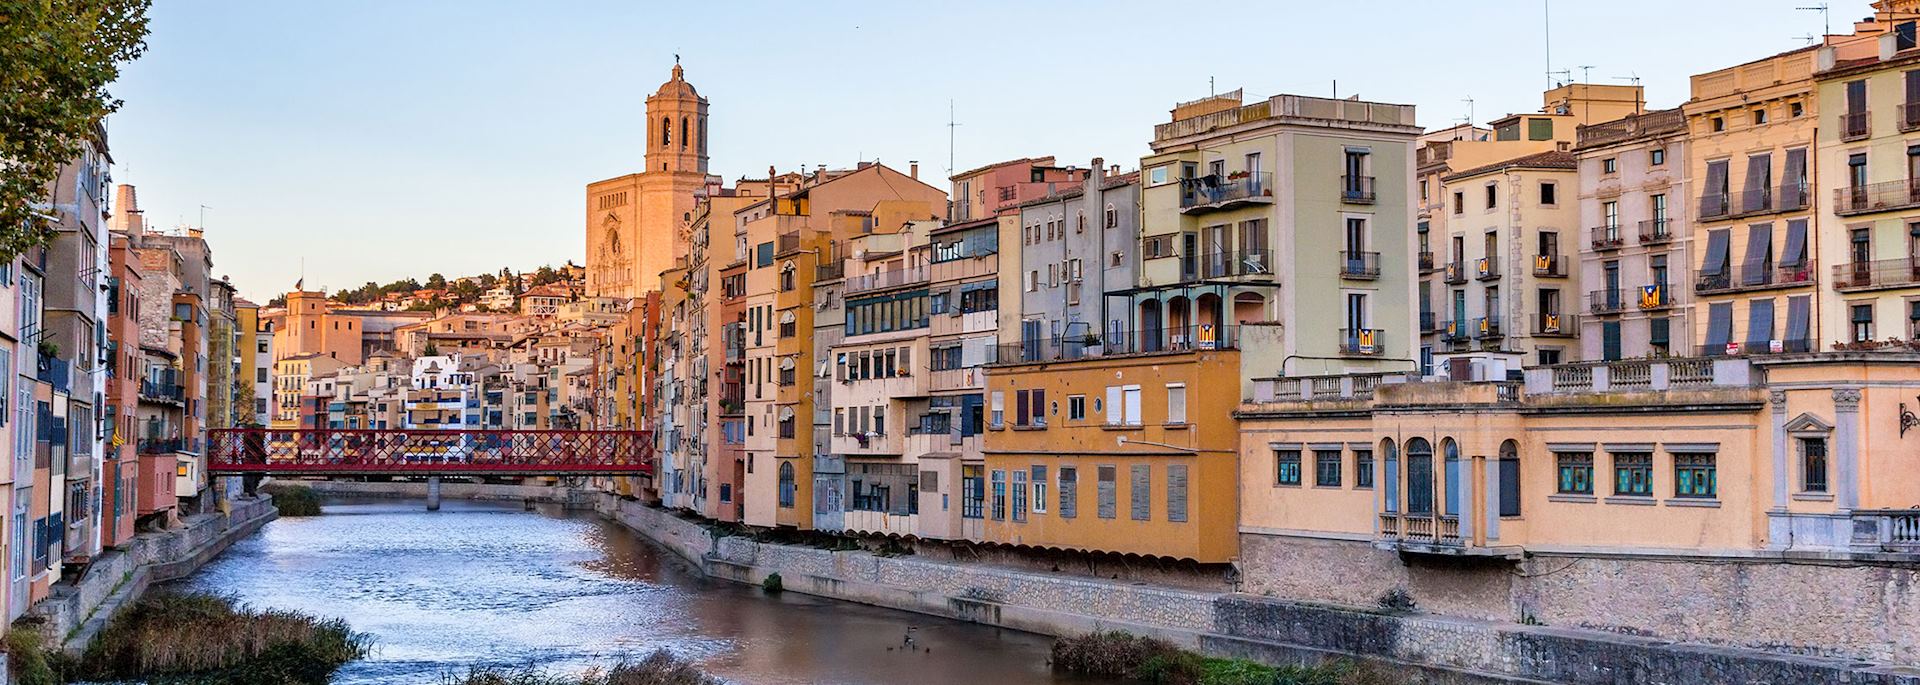 View of embankment, Girona